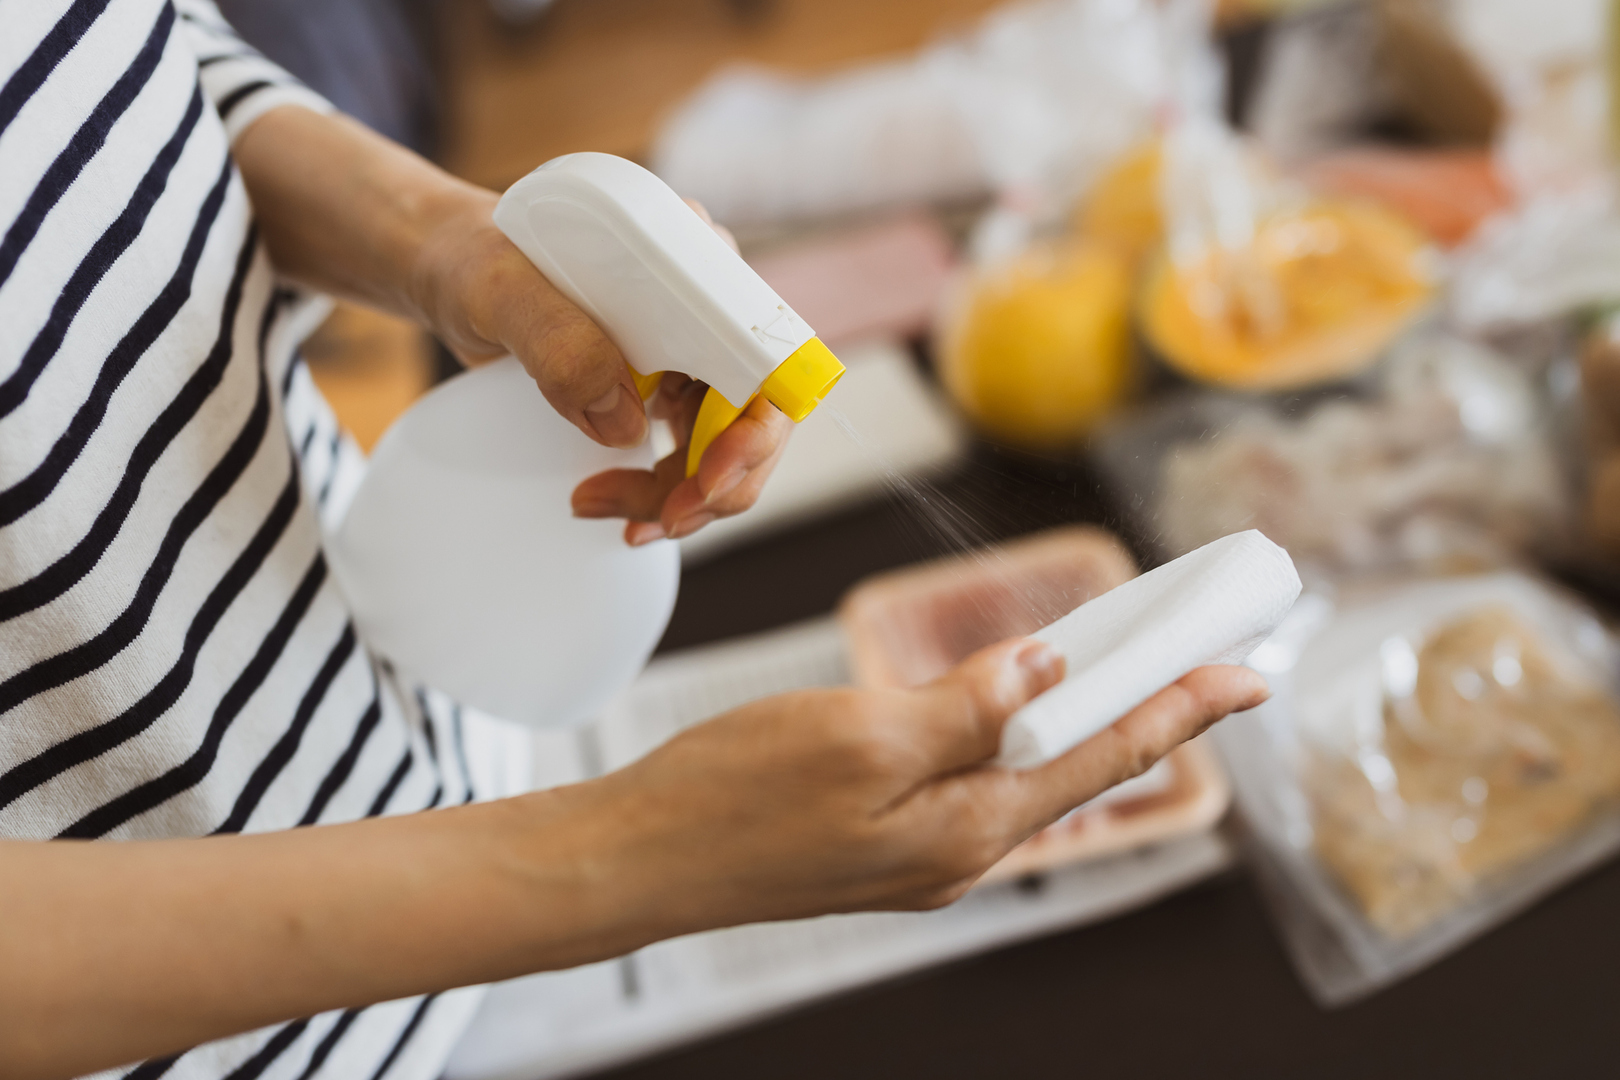 بينها السرطان والعقم .. خبراء يحذرون من مخاطر صحية عديدة تسببها منتجات التنظيف المنزلي